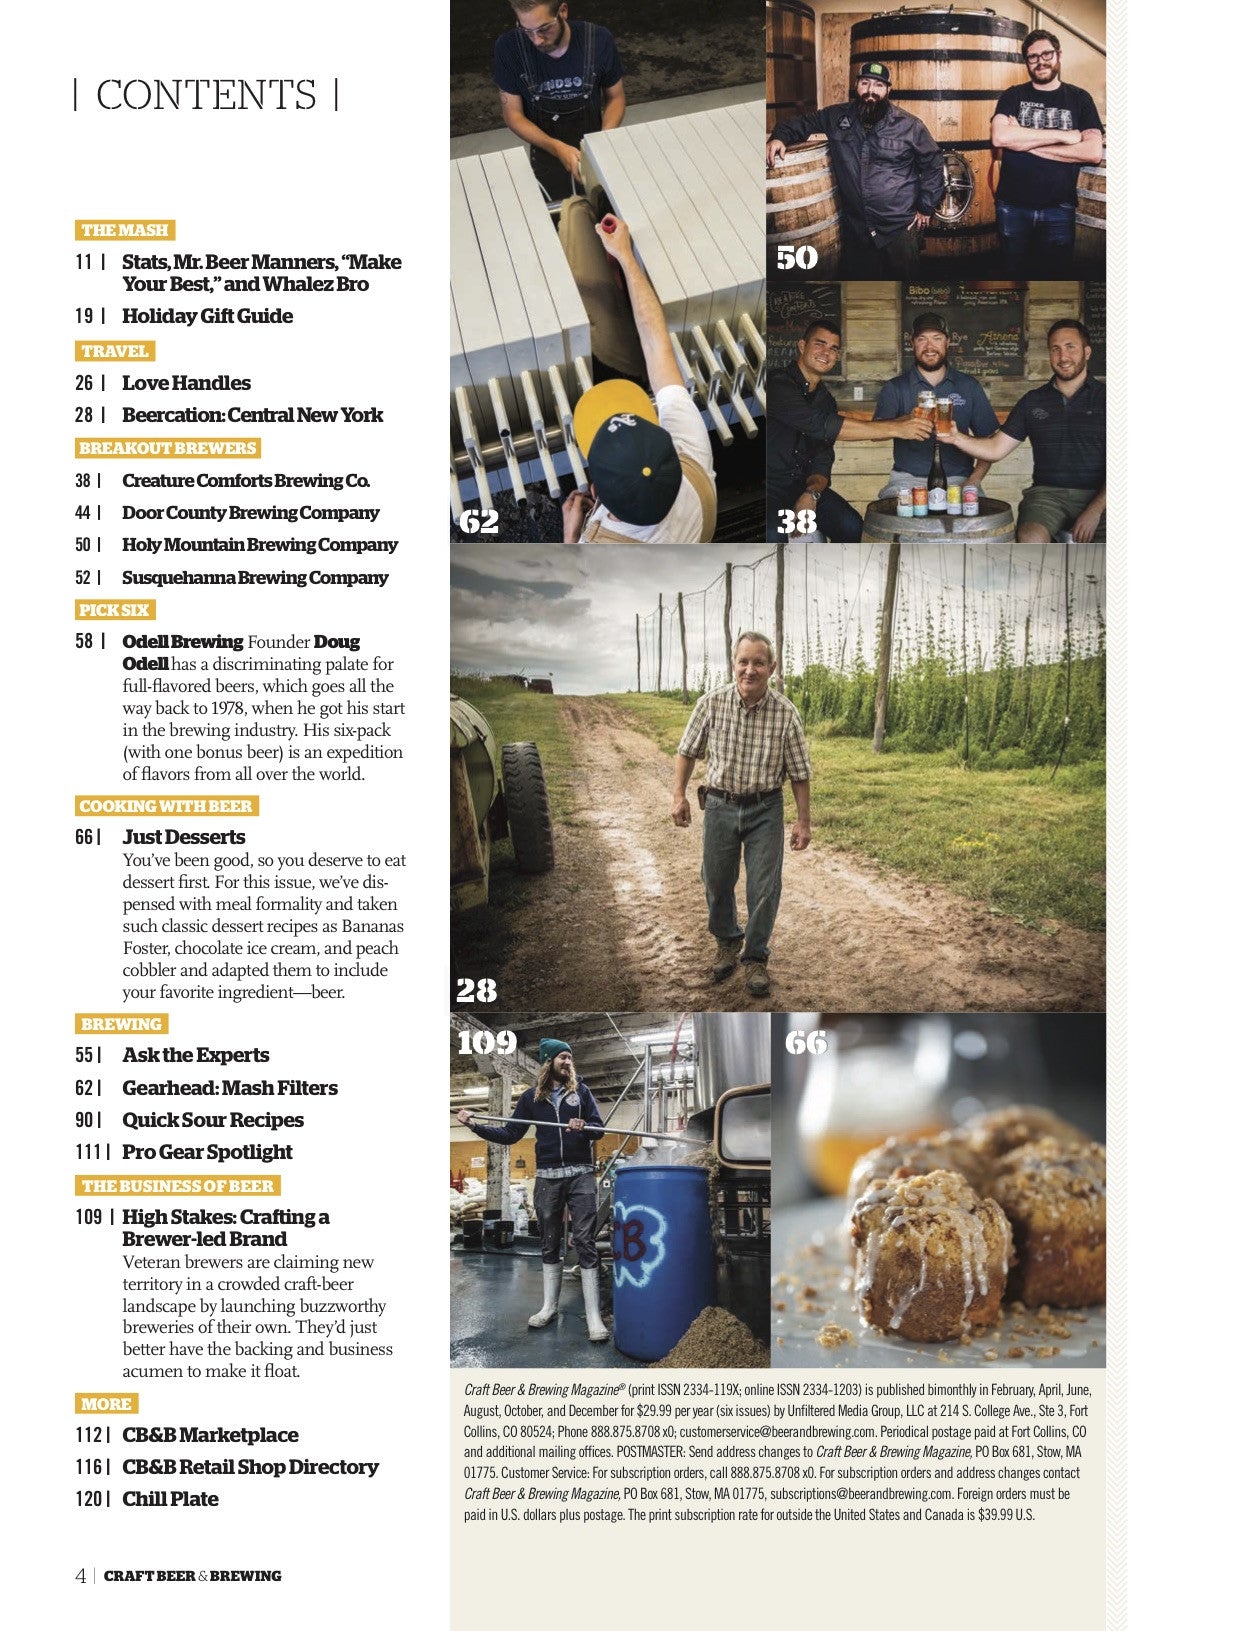 October-November 2016 Issue (The Art of Tart) - Craft Beer & Brewing